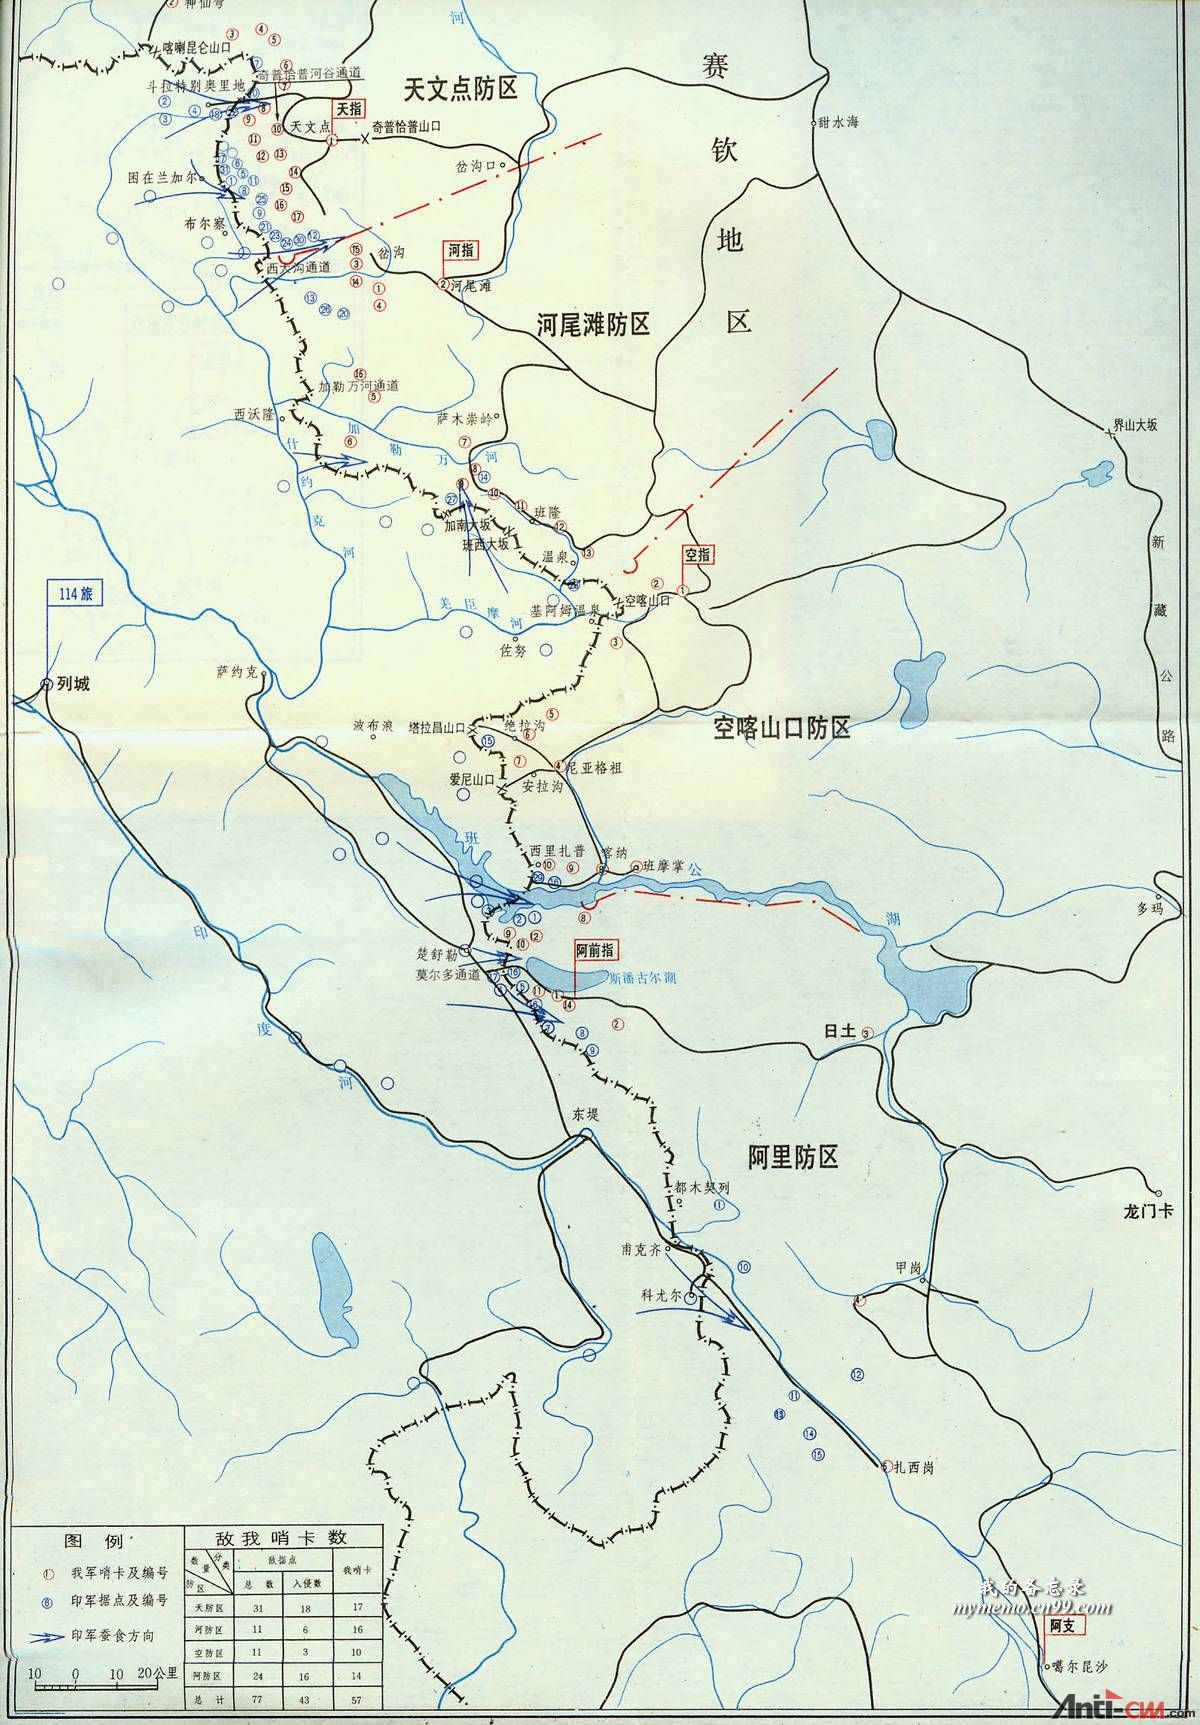 西线地区作战前、印军推进和中国军队反蚕食斗争状况.jpg